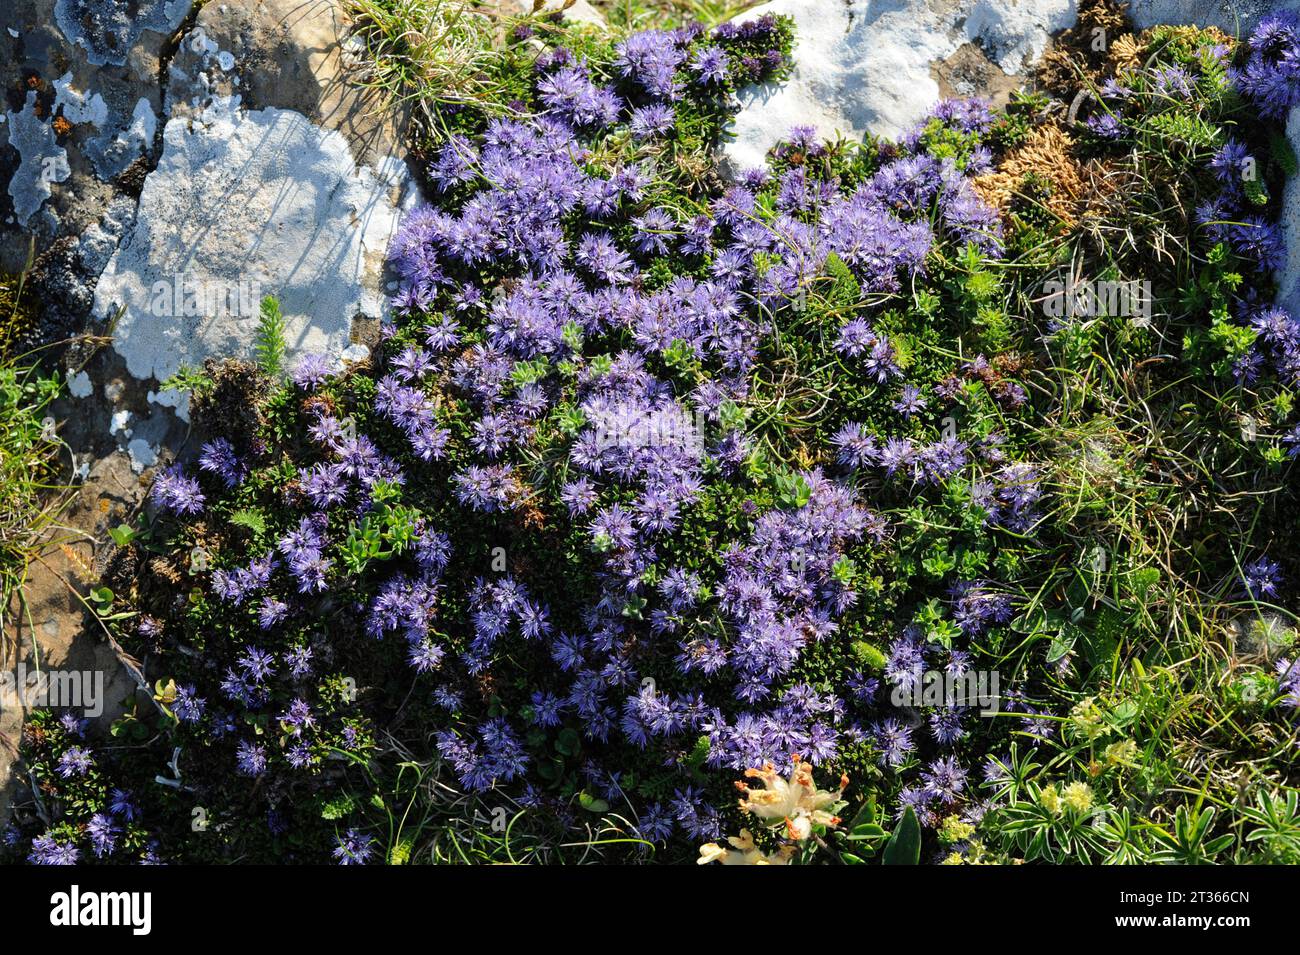 Globularia cordifolia repens or Globularia repens is a prostrate shrub endemic to mountains of southwestern Europe. This photo was taken in Navarra, S Stock Photo